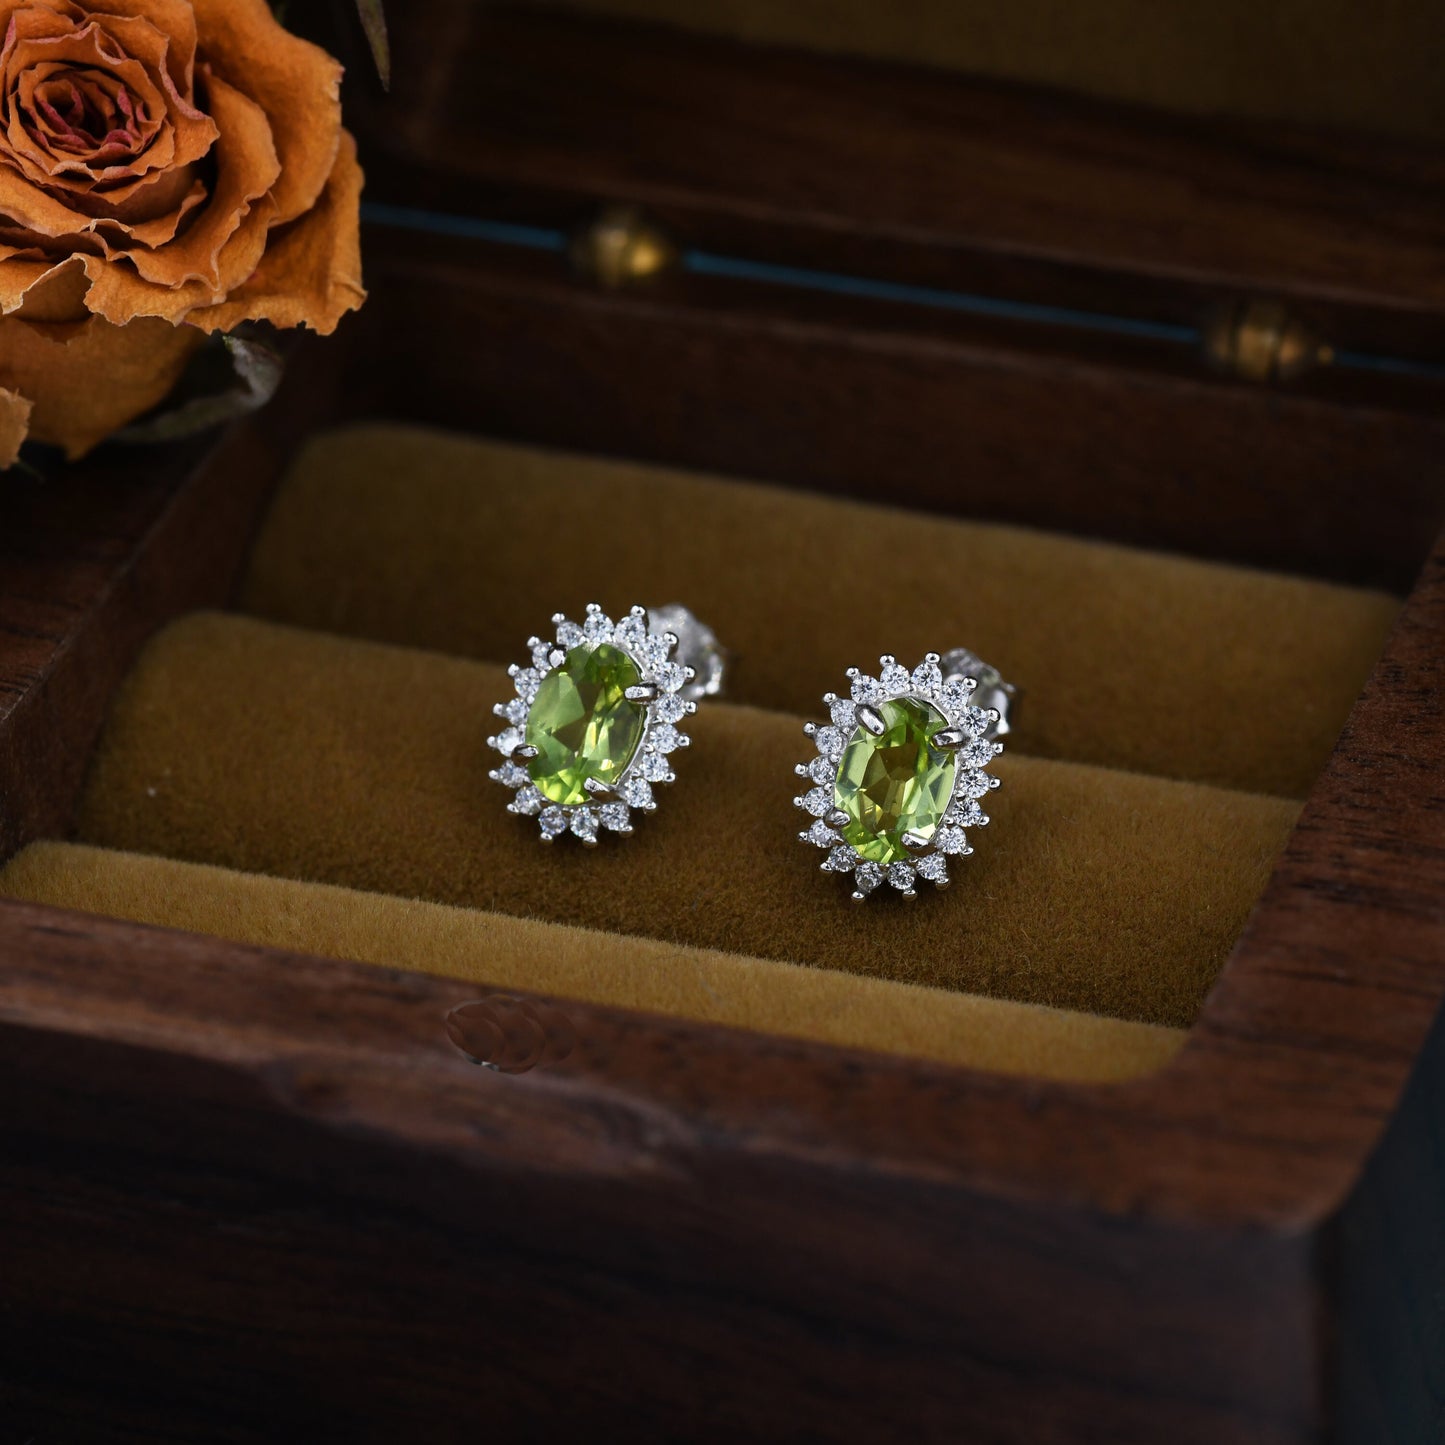 Genuine Peridot Crystal Stud Earrings in Sterling Silver, Natural Green Peridot Oval Stud Earrings, August Birthstone